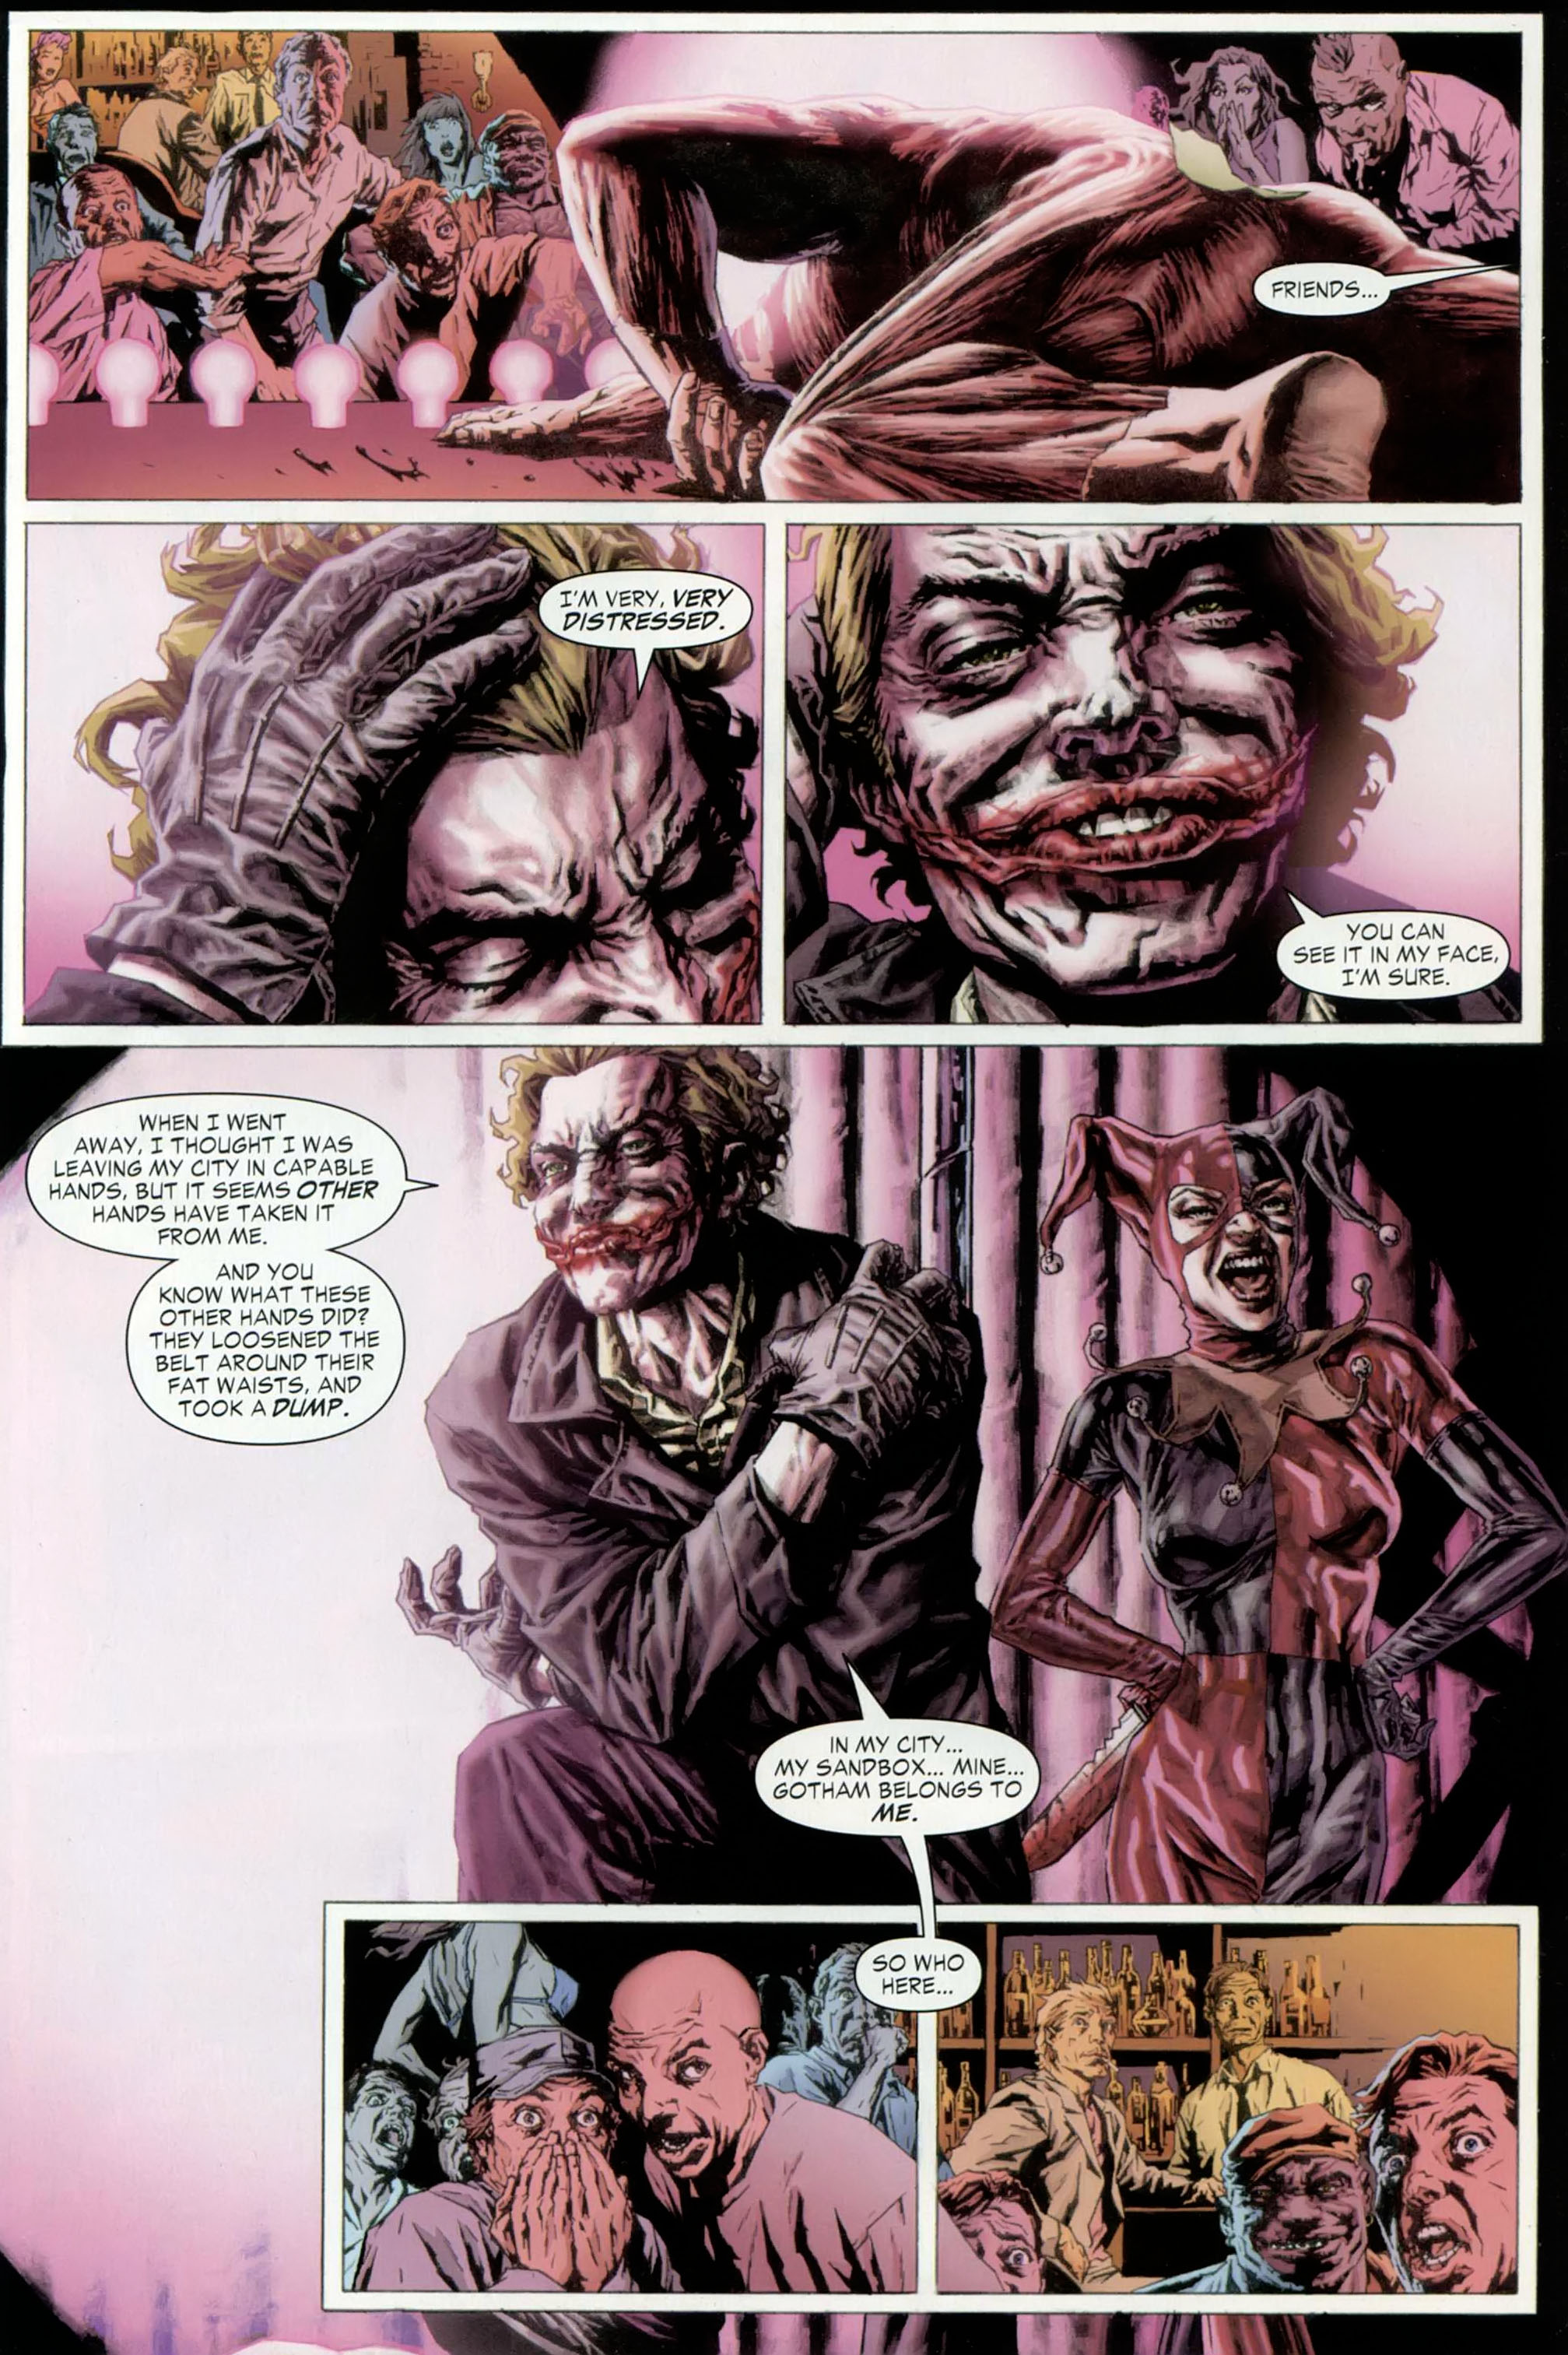 The Joker - 1 of 4